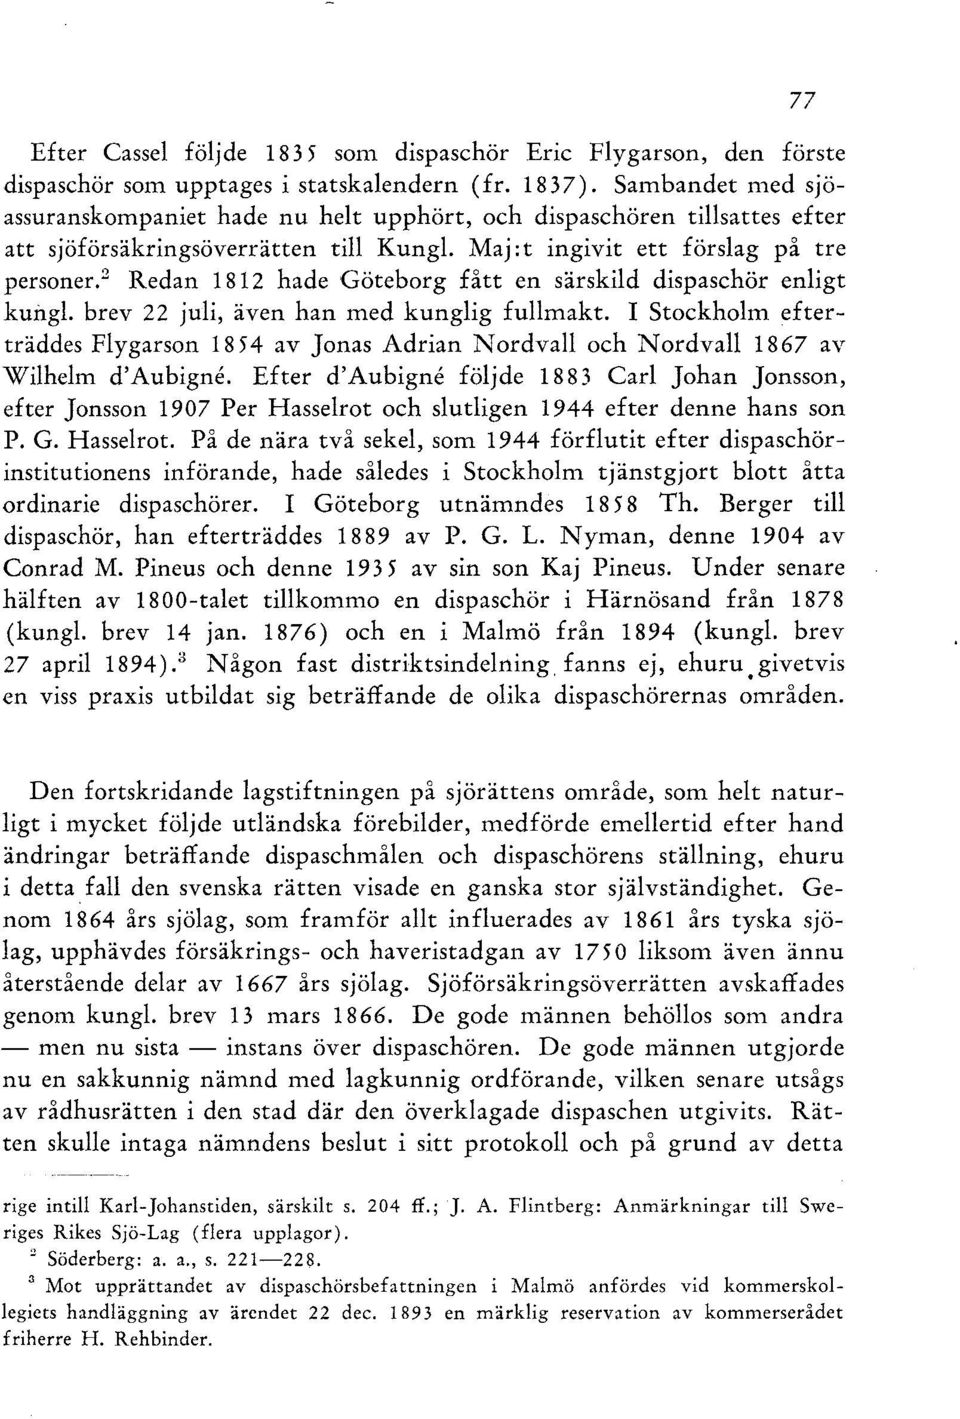 2 Redan 1812 hade Göteborg fått en särskild dispaschör enligt kungl. brev 22 juli, även han med kunglig fullmakt.